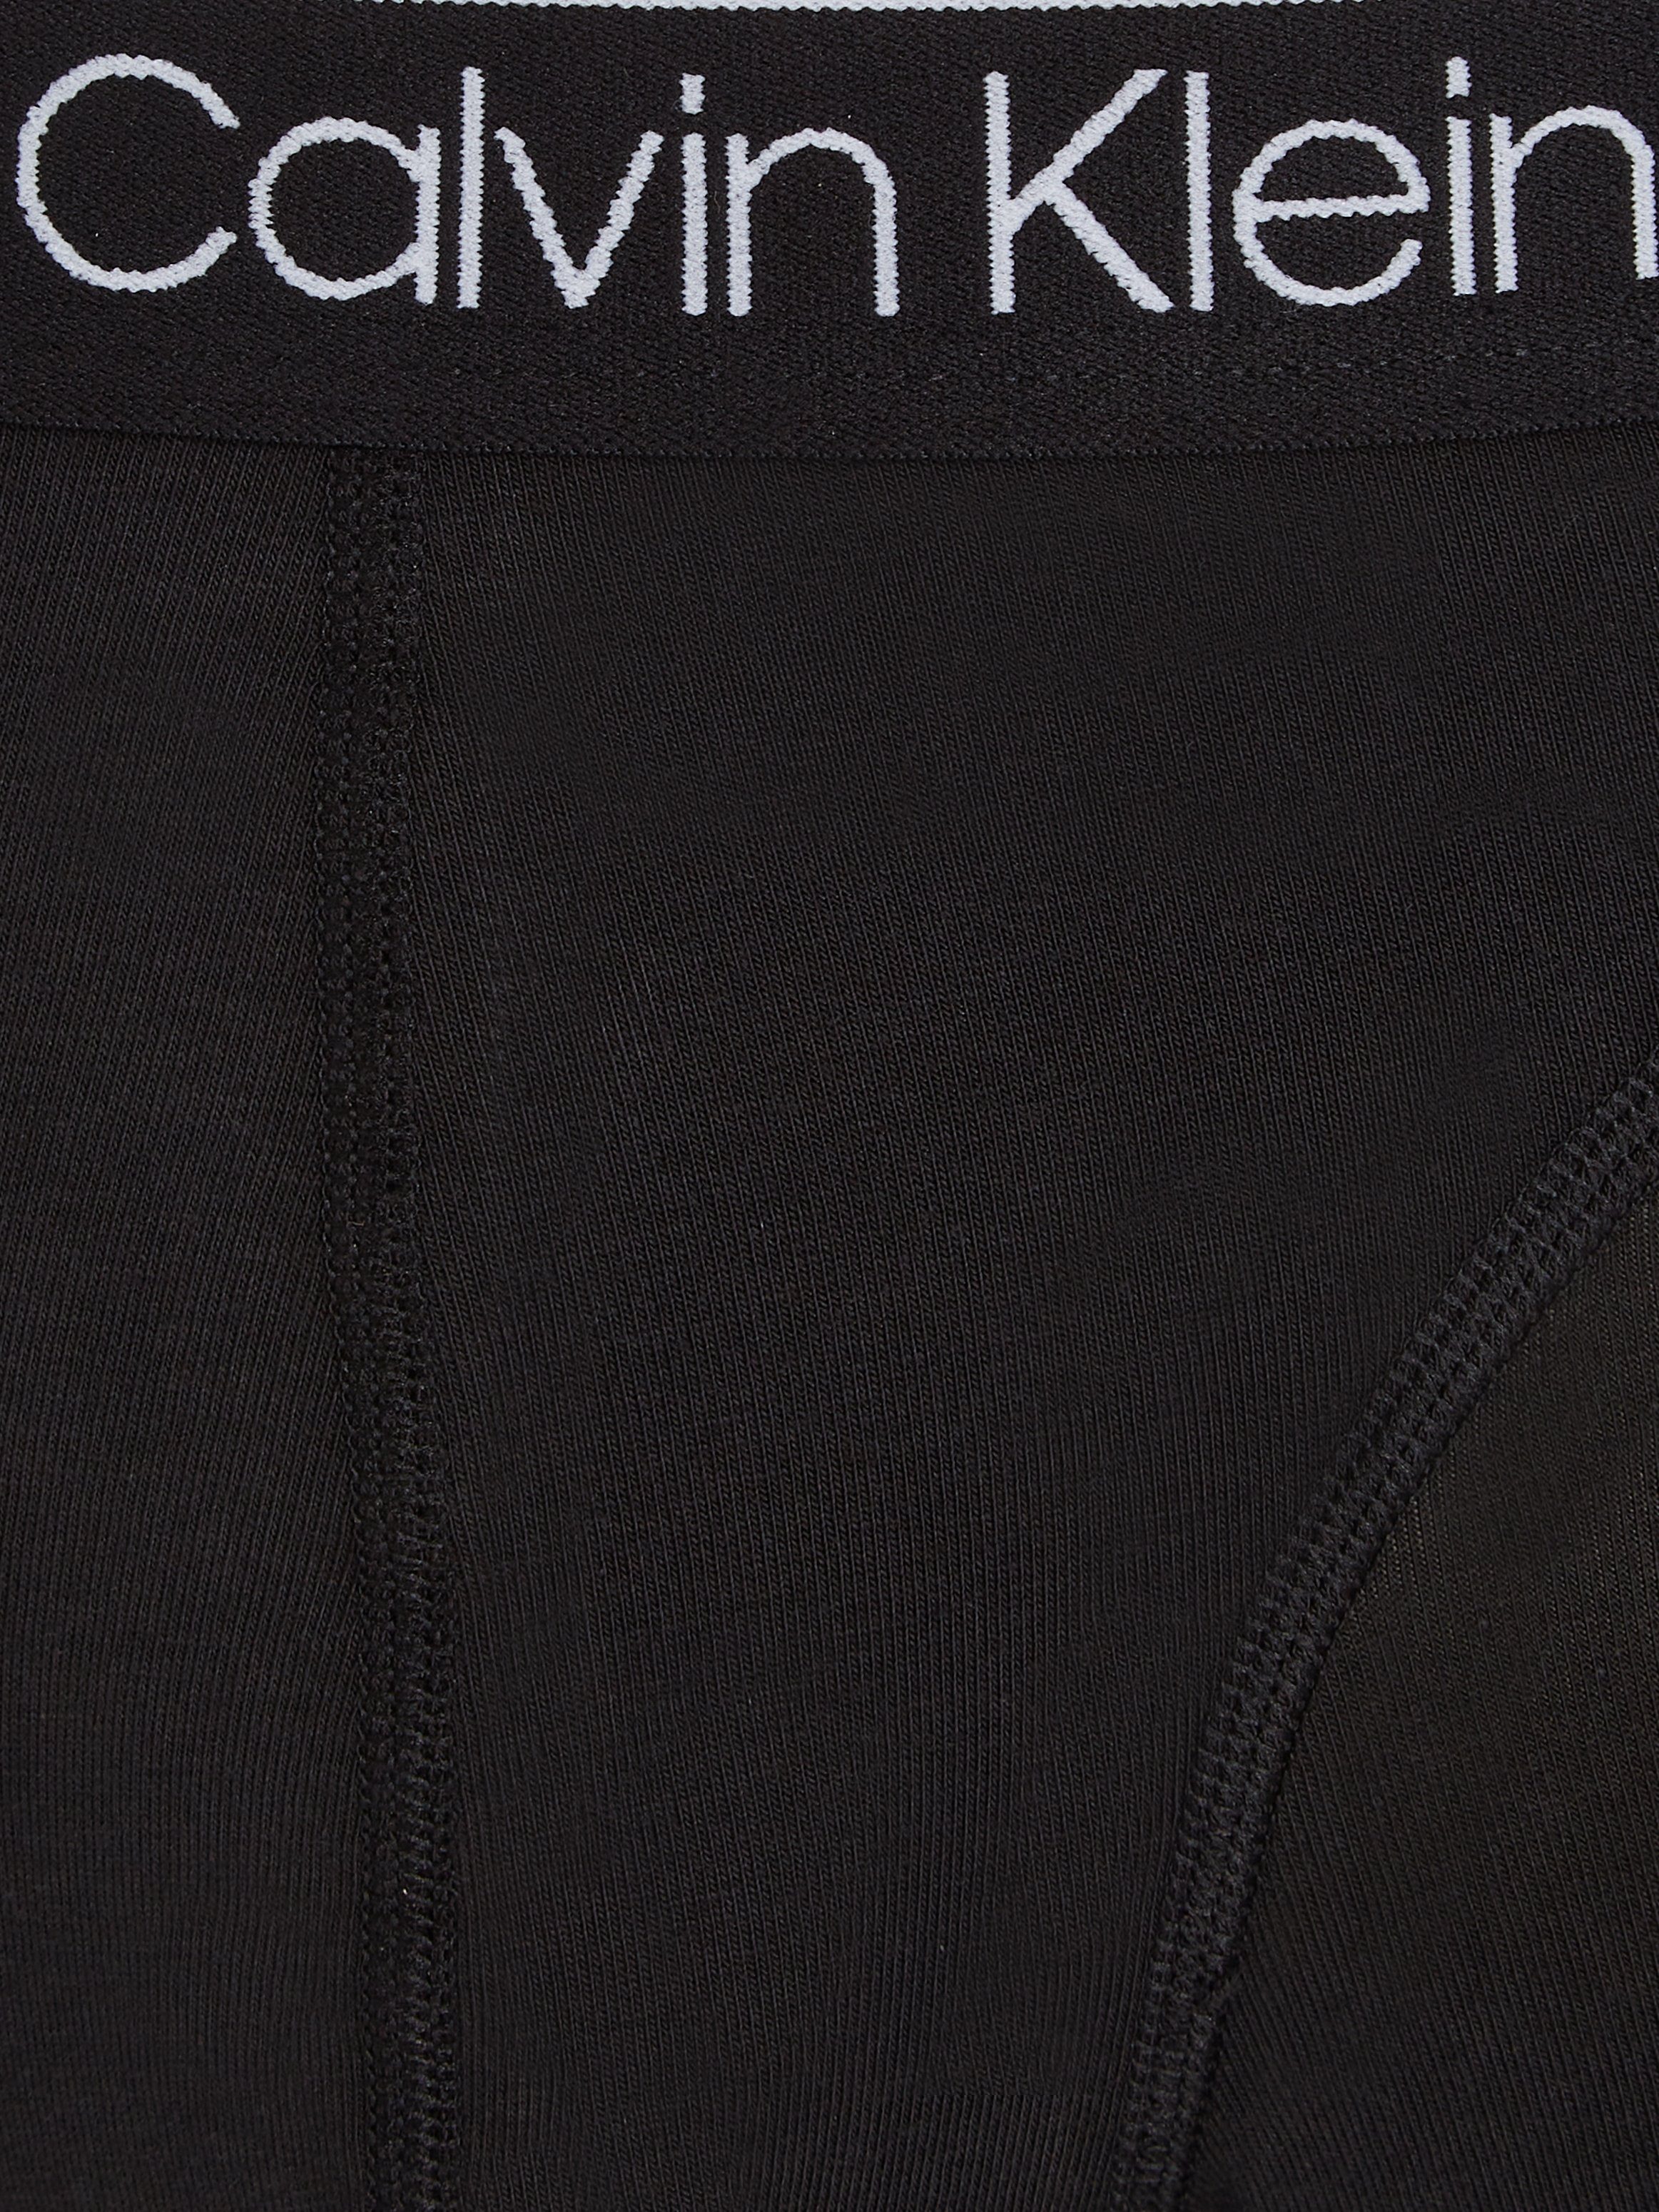 Calvin Klein Underwear Boxer BRIEF Bund 3er-Pack) mit BOXER Markenlabel (Packung, 3PK 3-St., auf dem